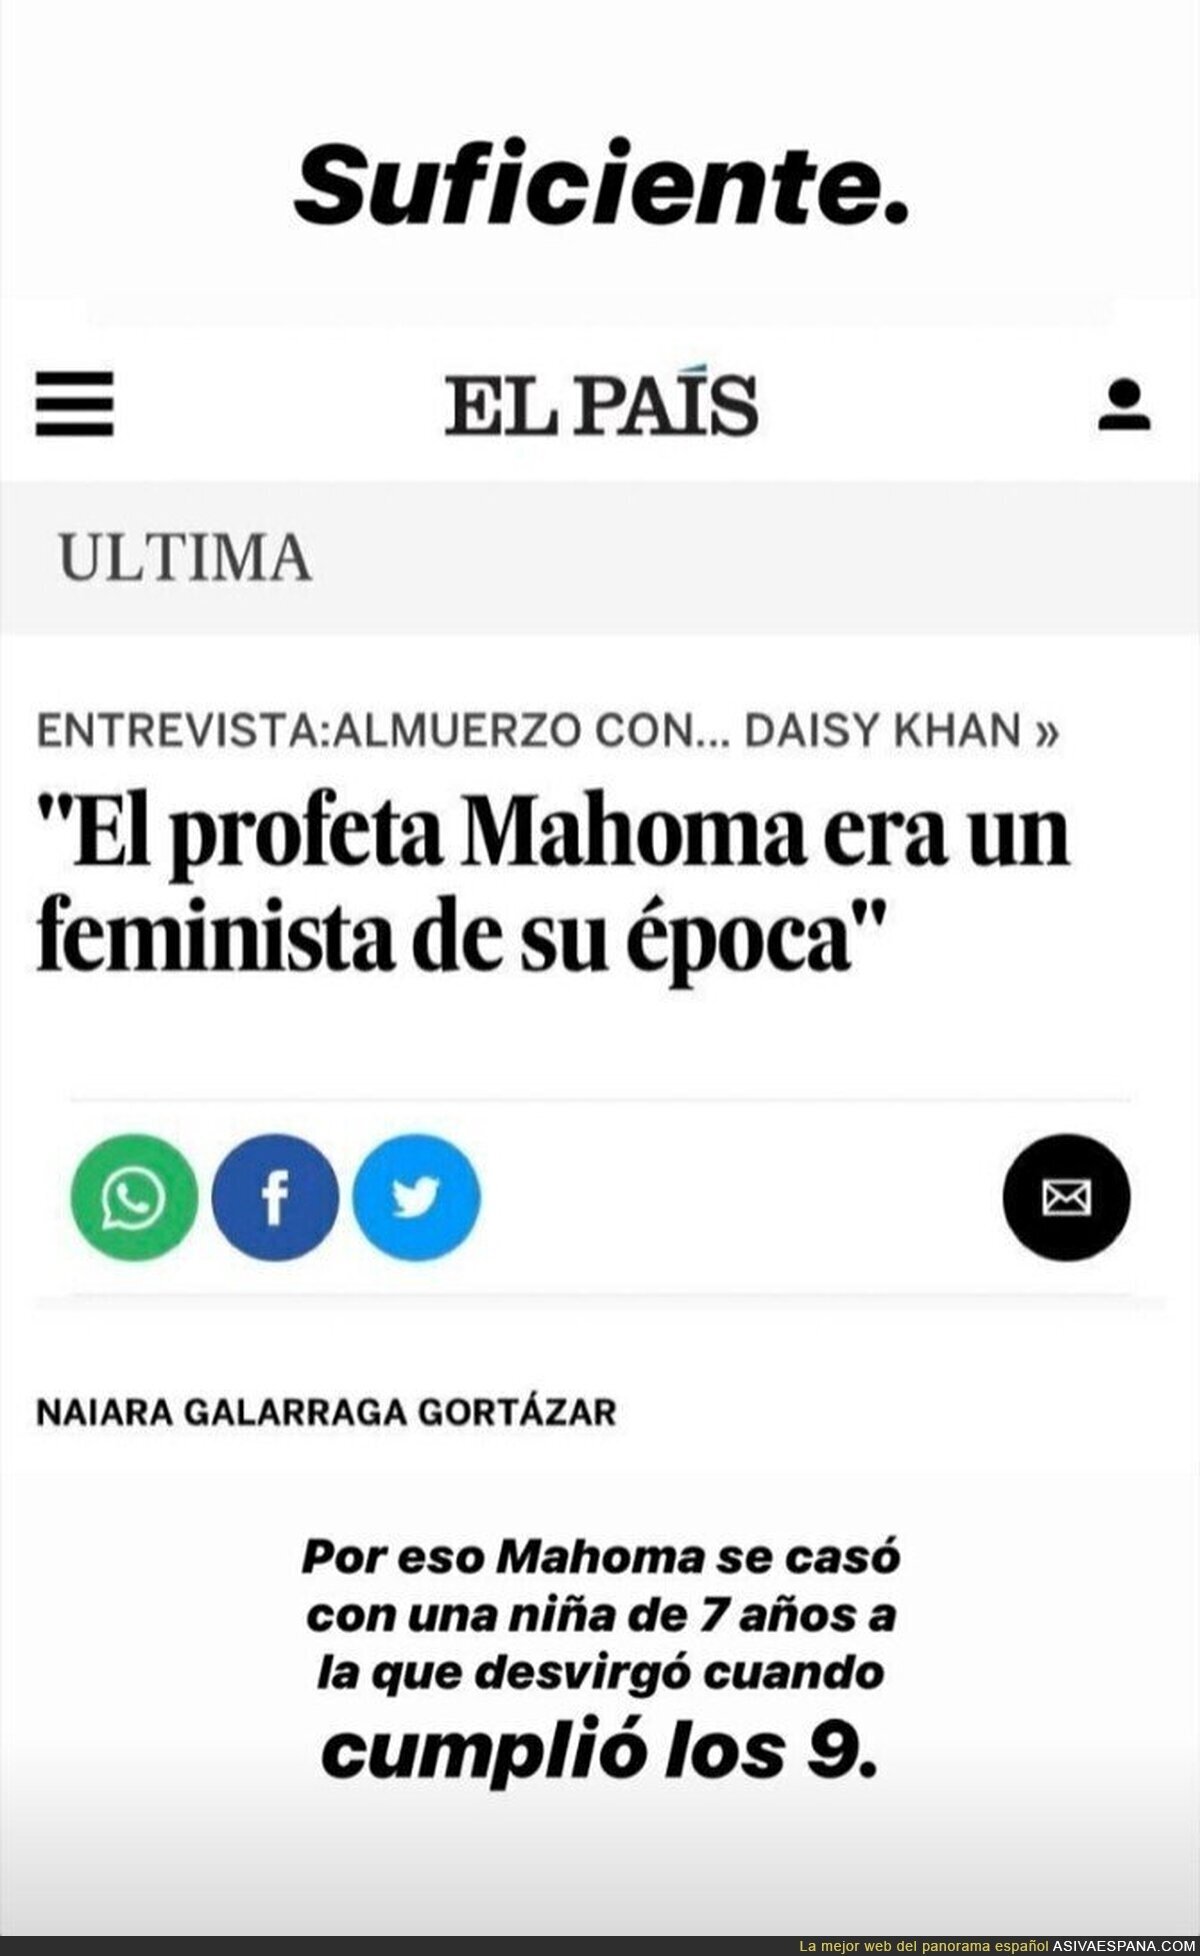 El País publica que Mahoma era "feminista" y se queda tan ancho